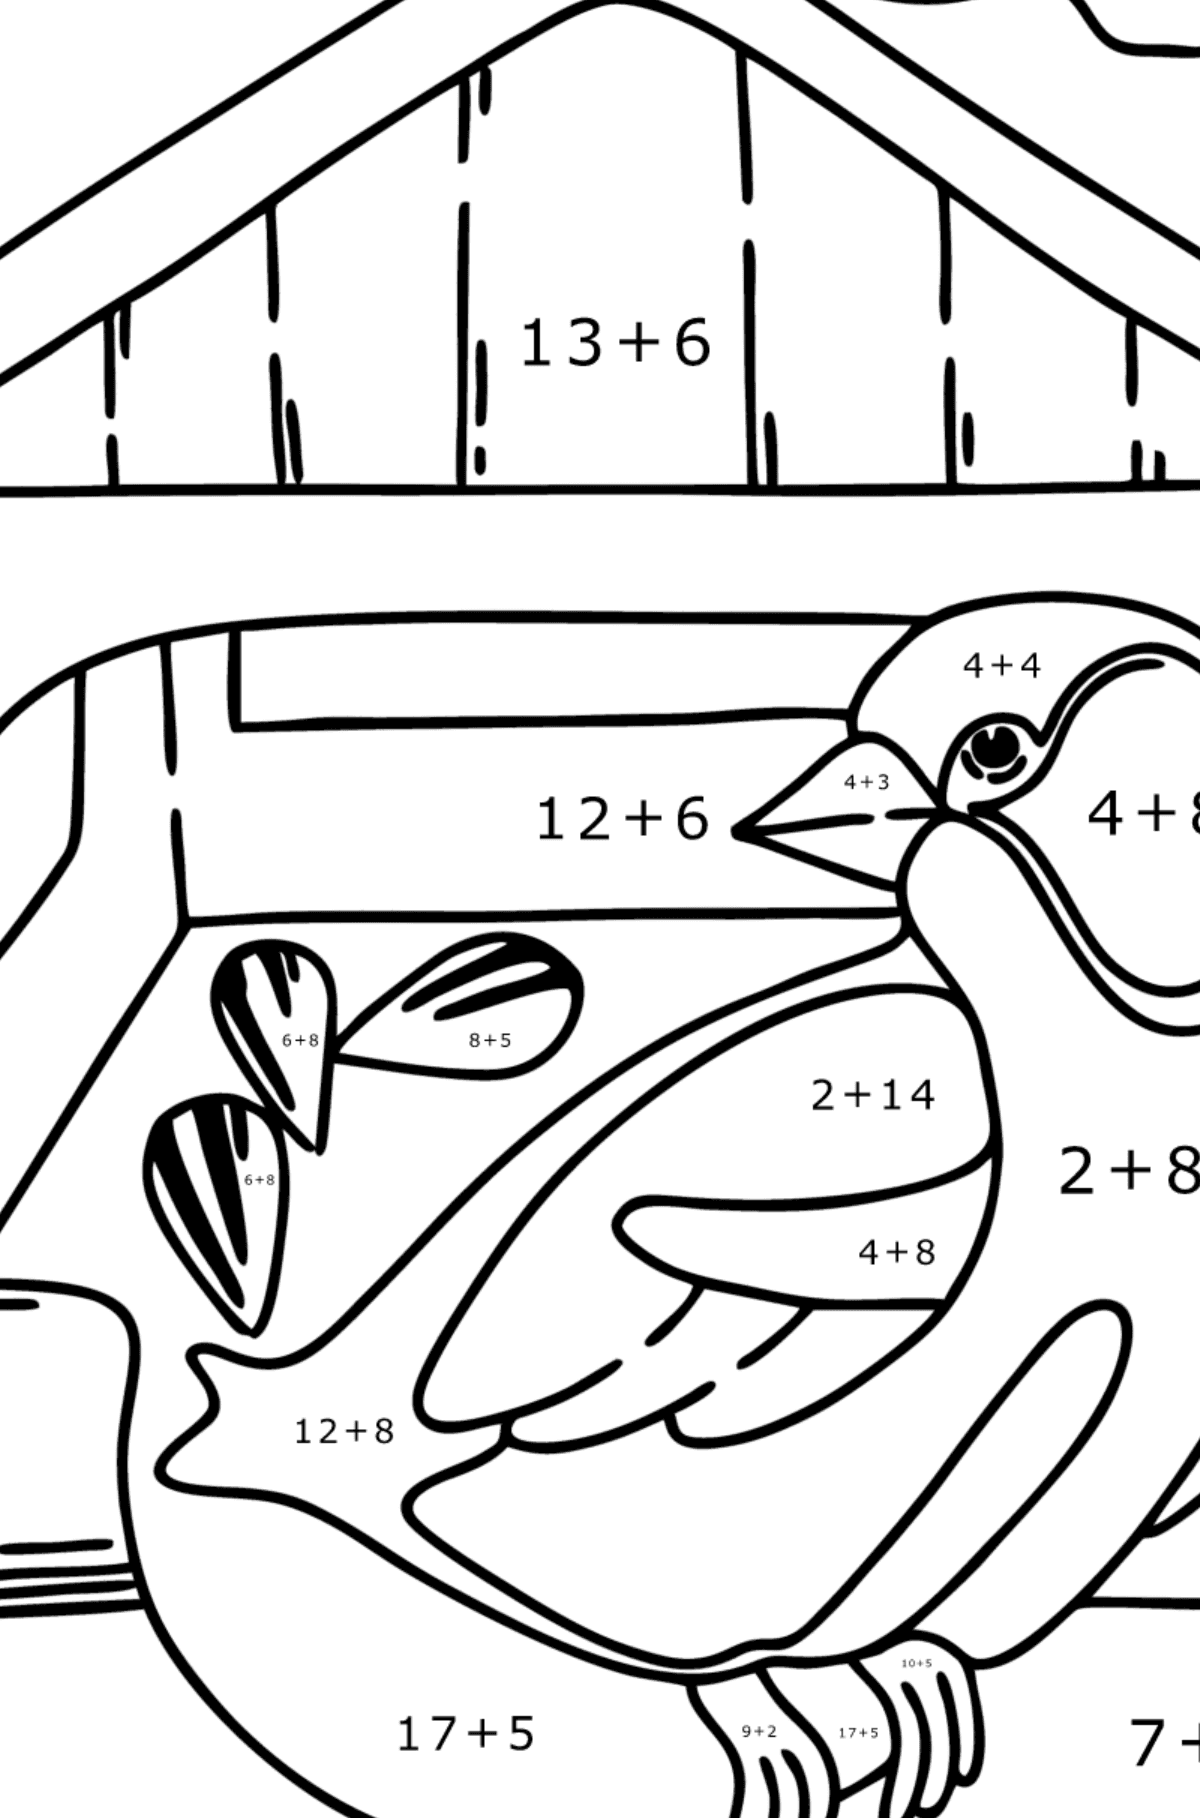 Tegning til farvning foderautomater til fugle - Matematisk farvelægning side -- Tilføjelse for børn